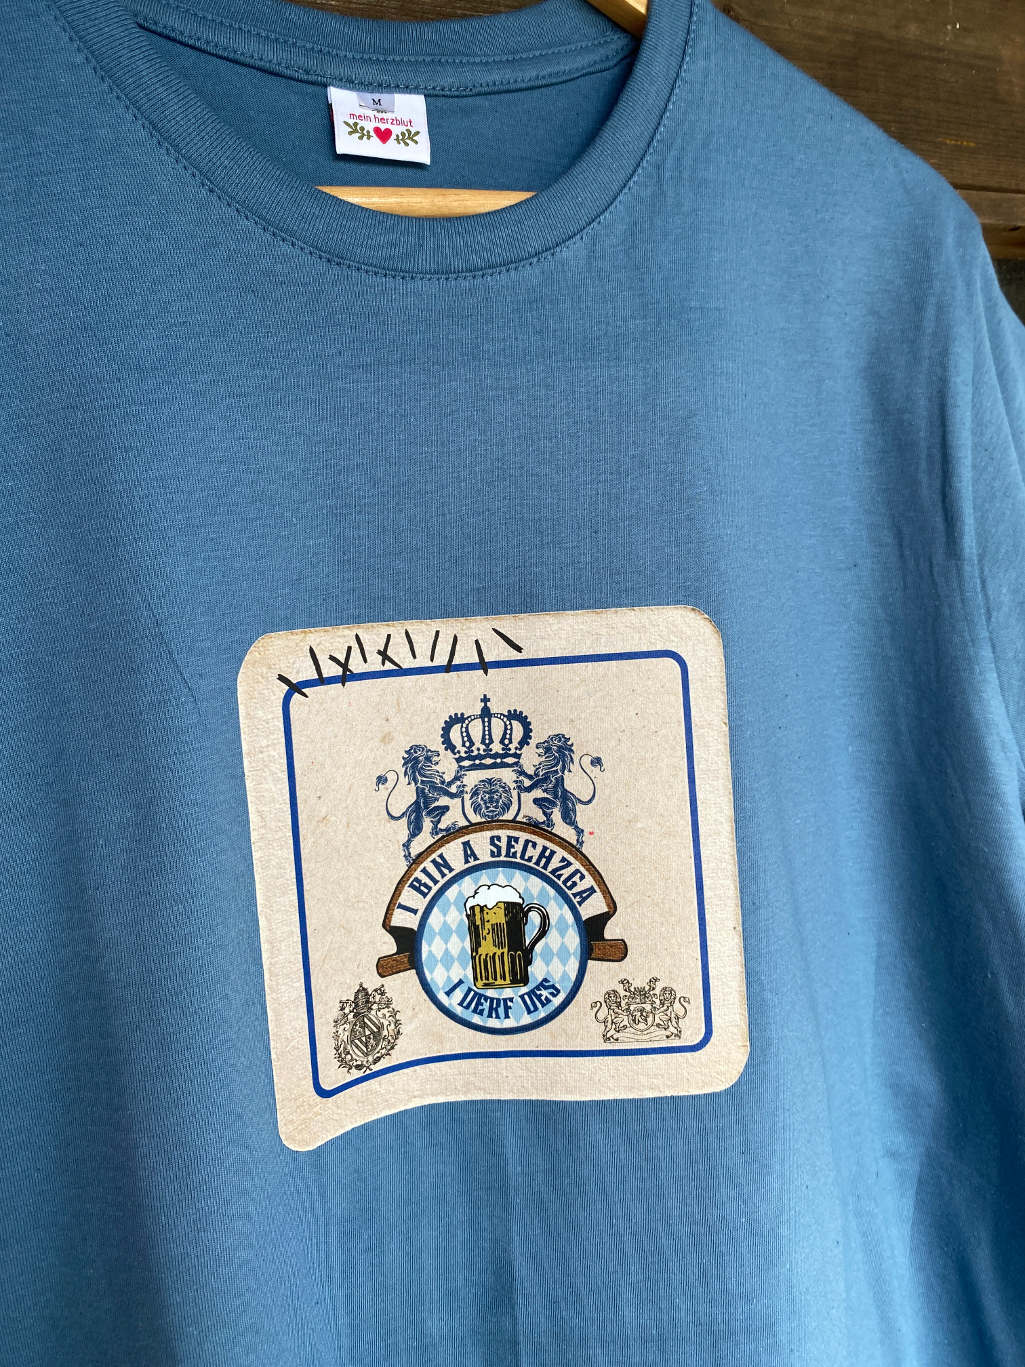 blaues Bierdeckel Shirt retro mein herzblut bayrisch Shop